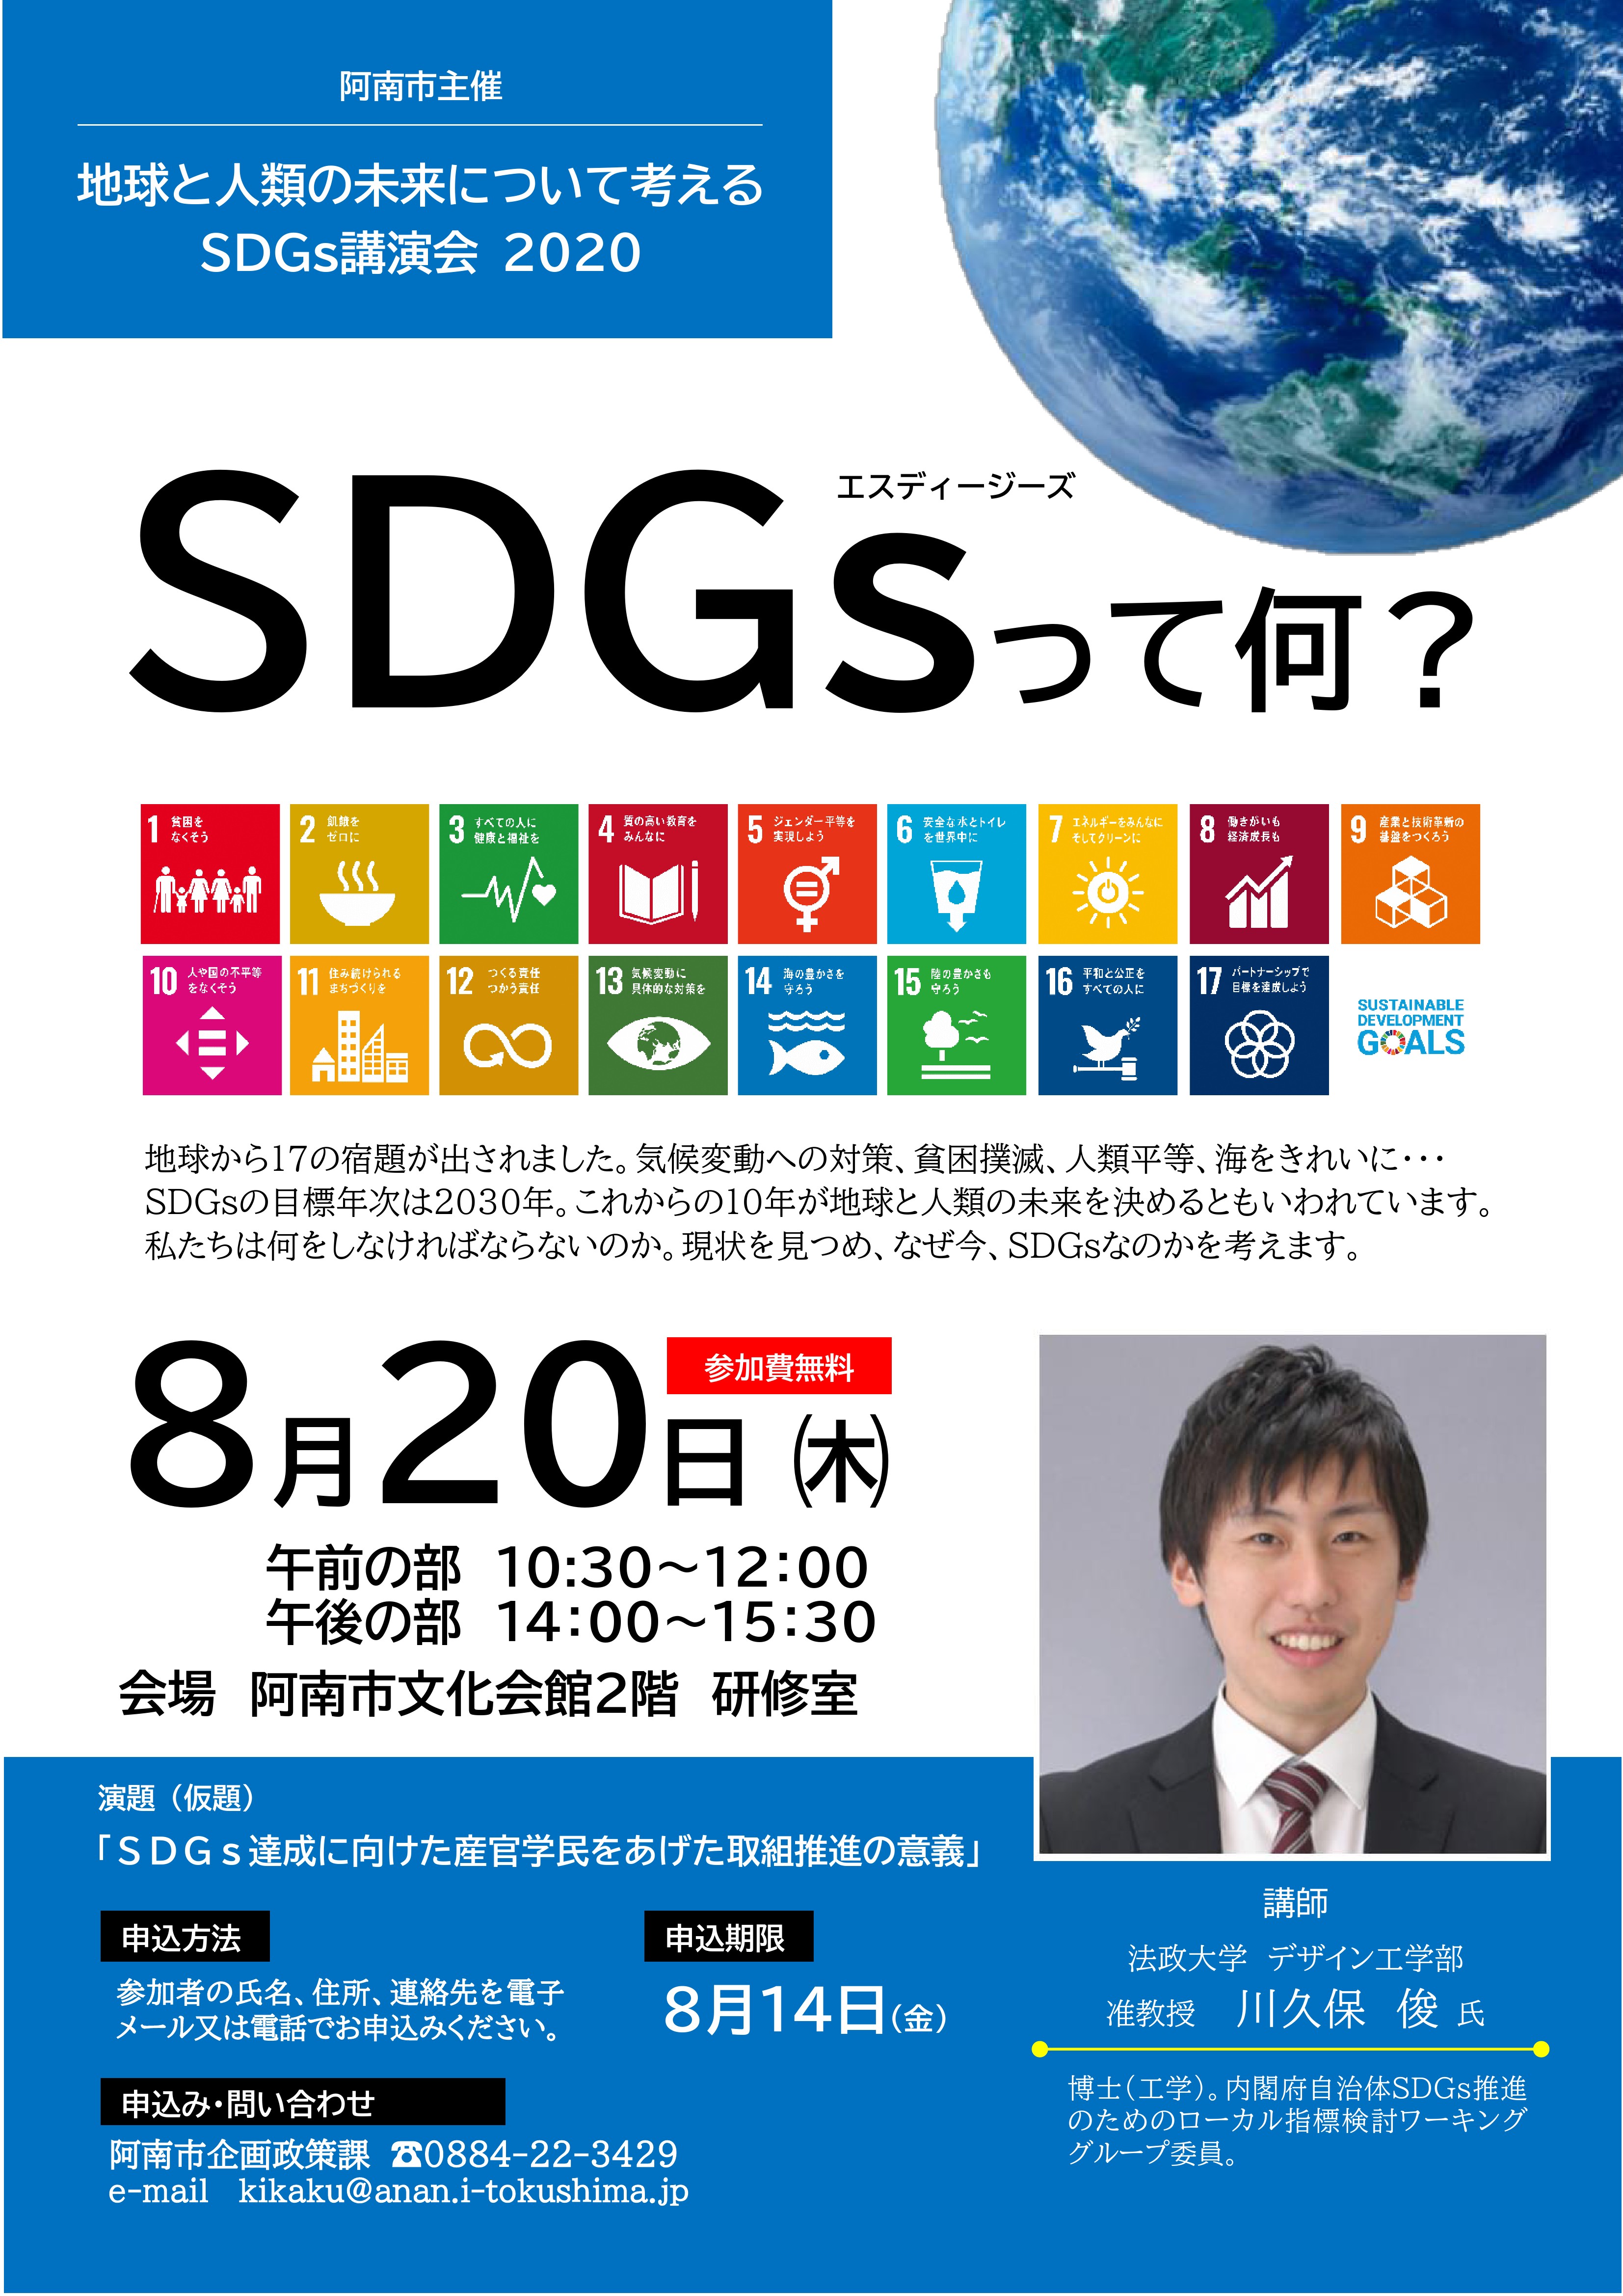 【阿南市】「SDGs講演会 2020」の開催案内について